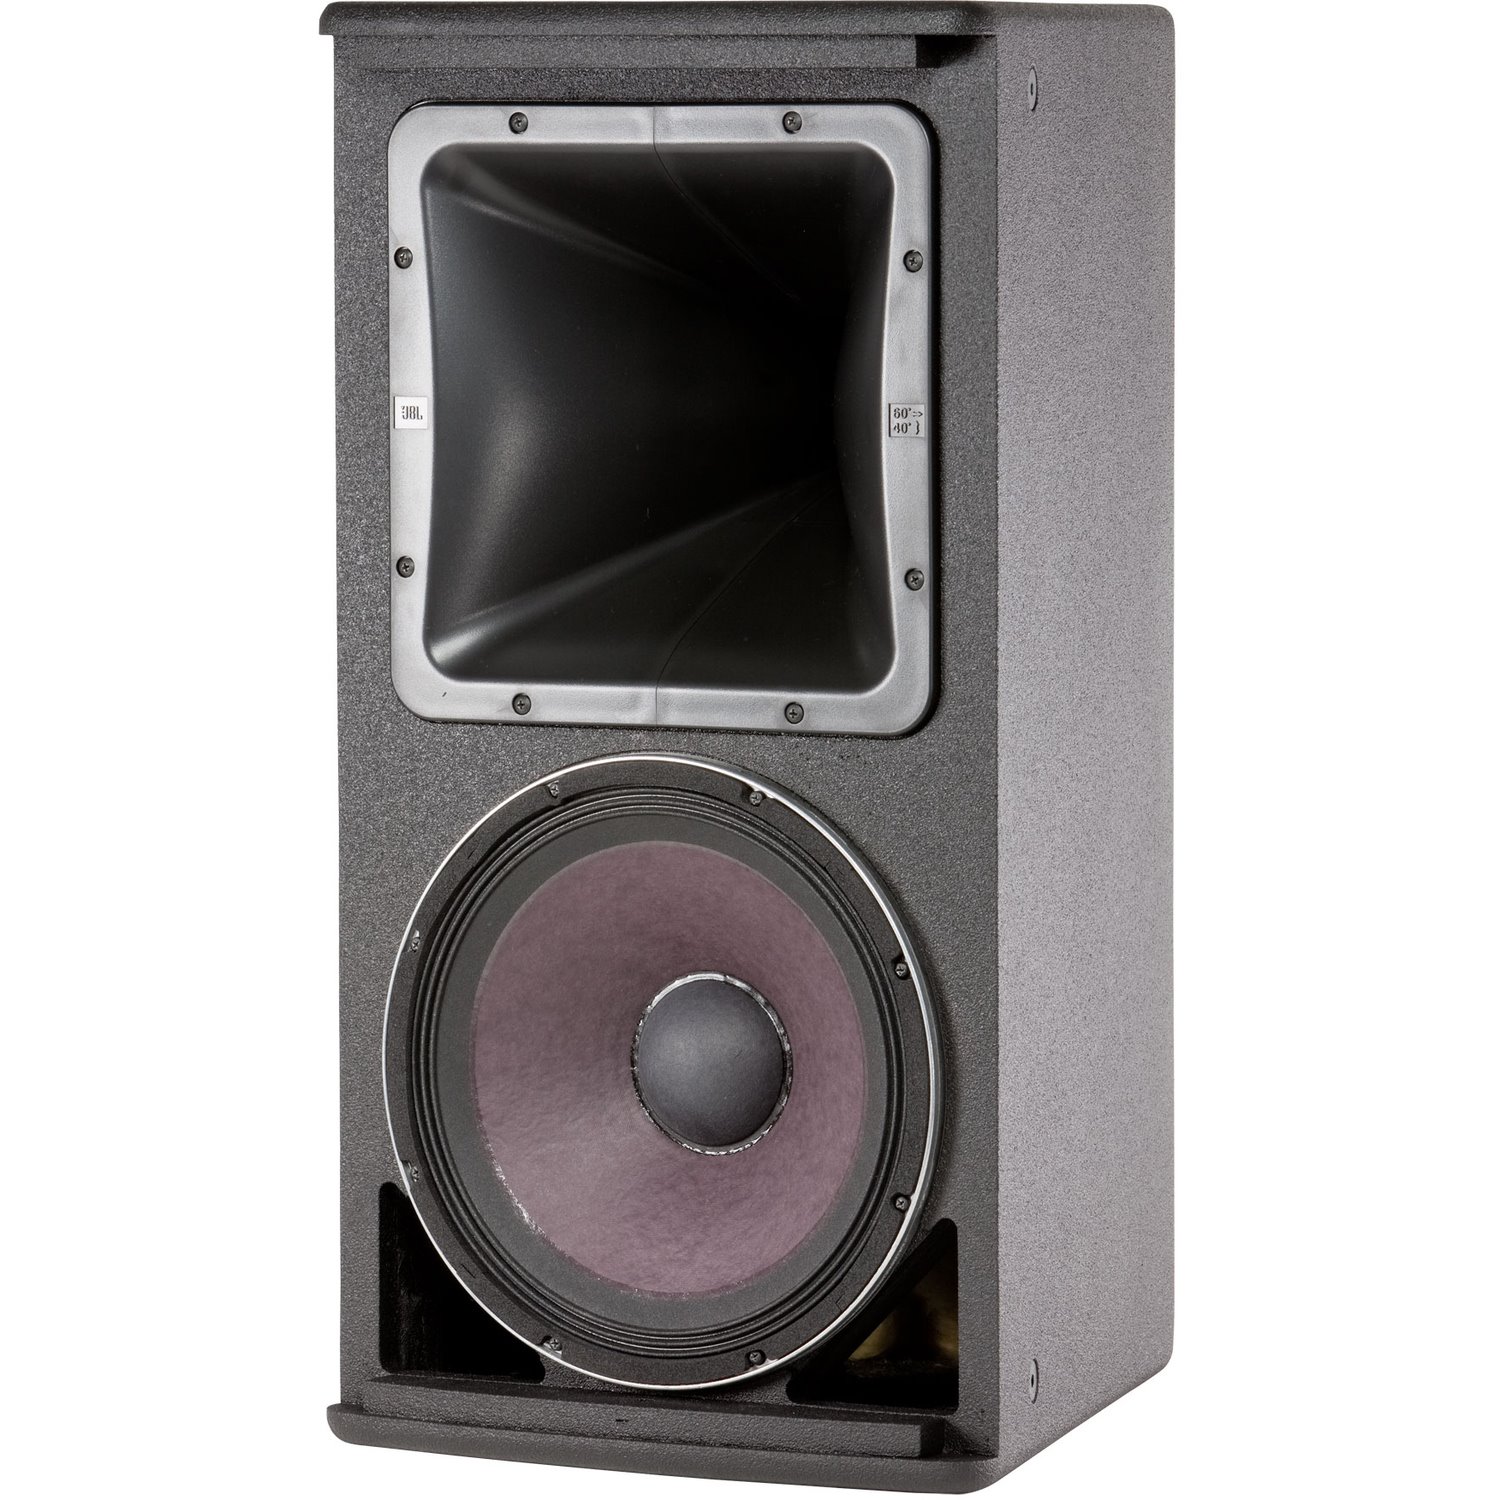 JBL Professional Professional AM5212/64 2-way Speaker - 300 W RMS - Black